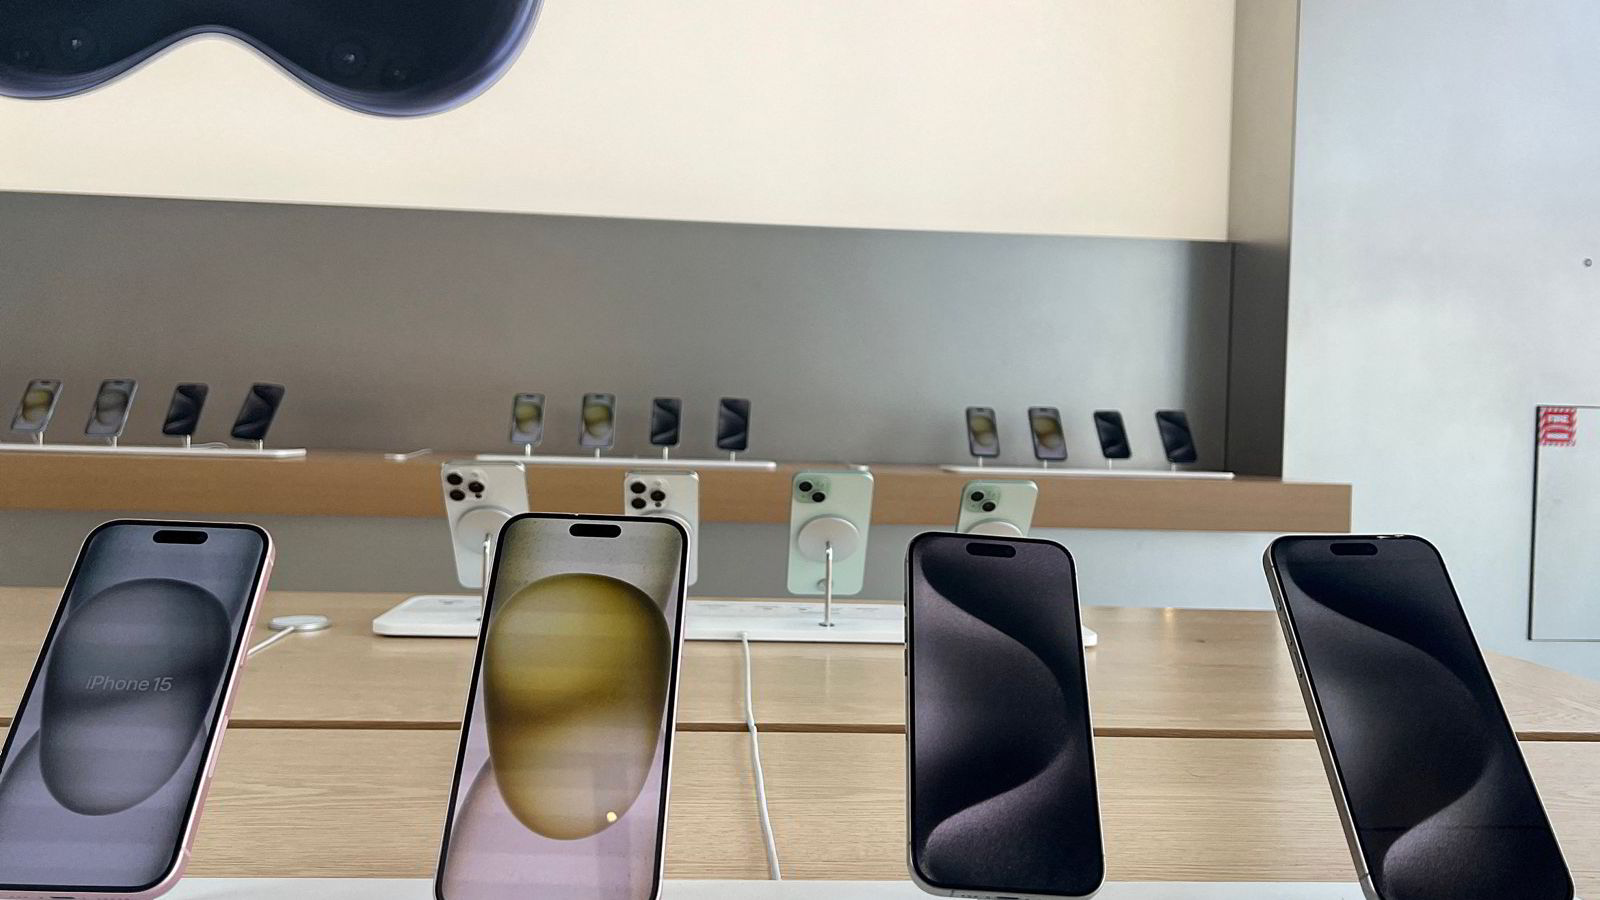 Problemene fortsetter for Apple – Iphone-salget stuper